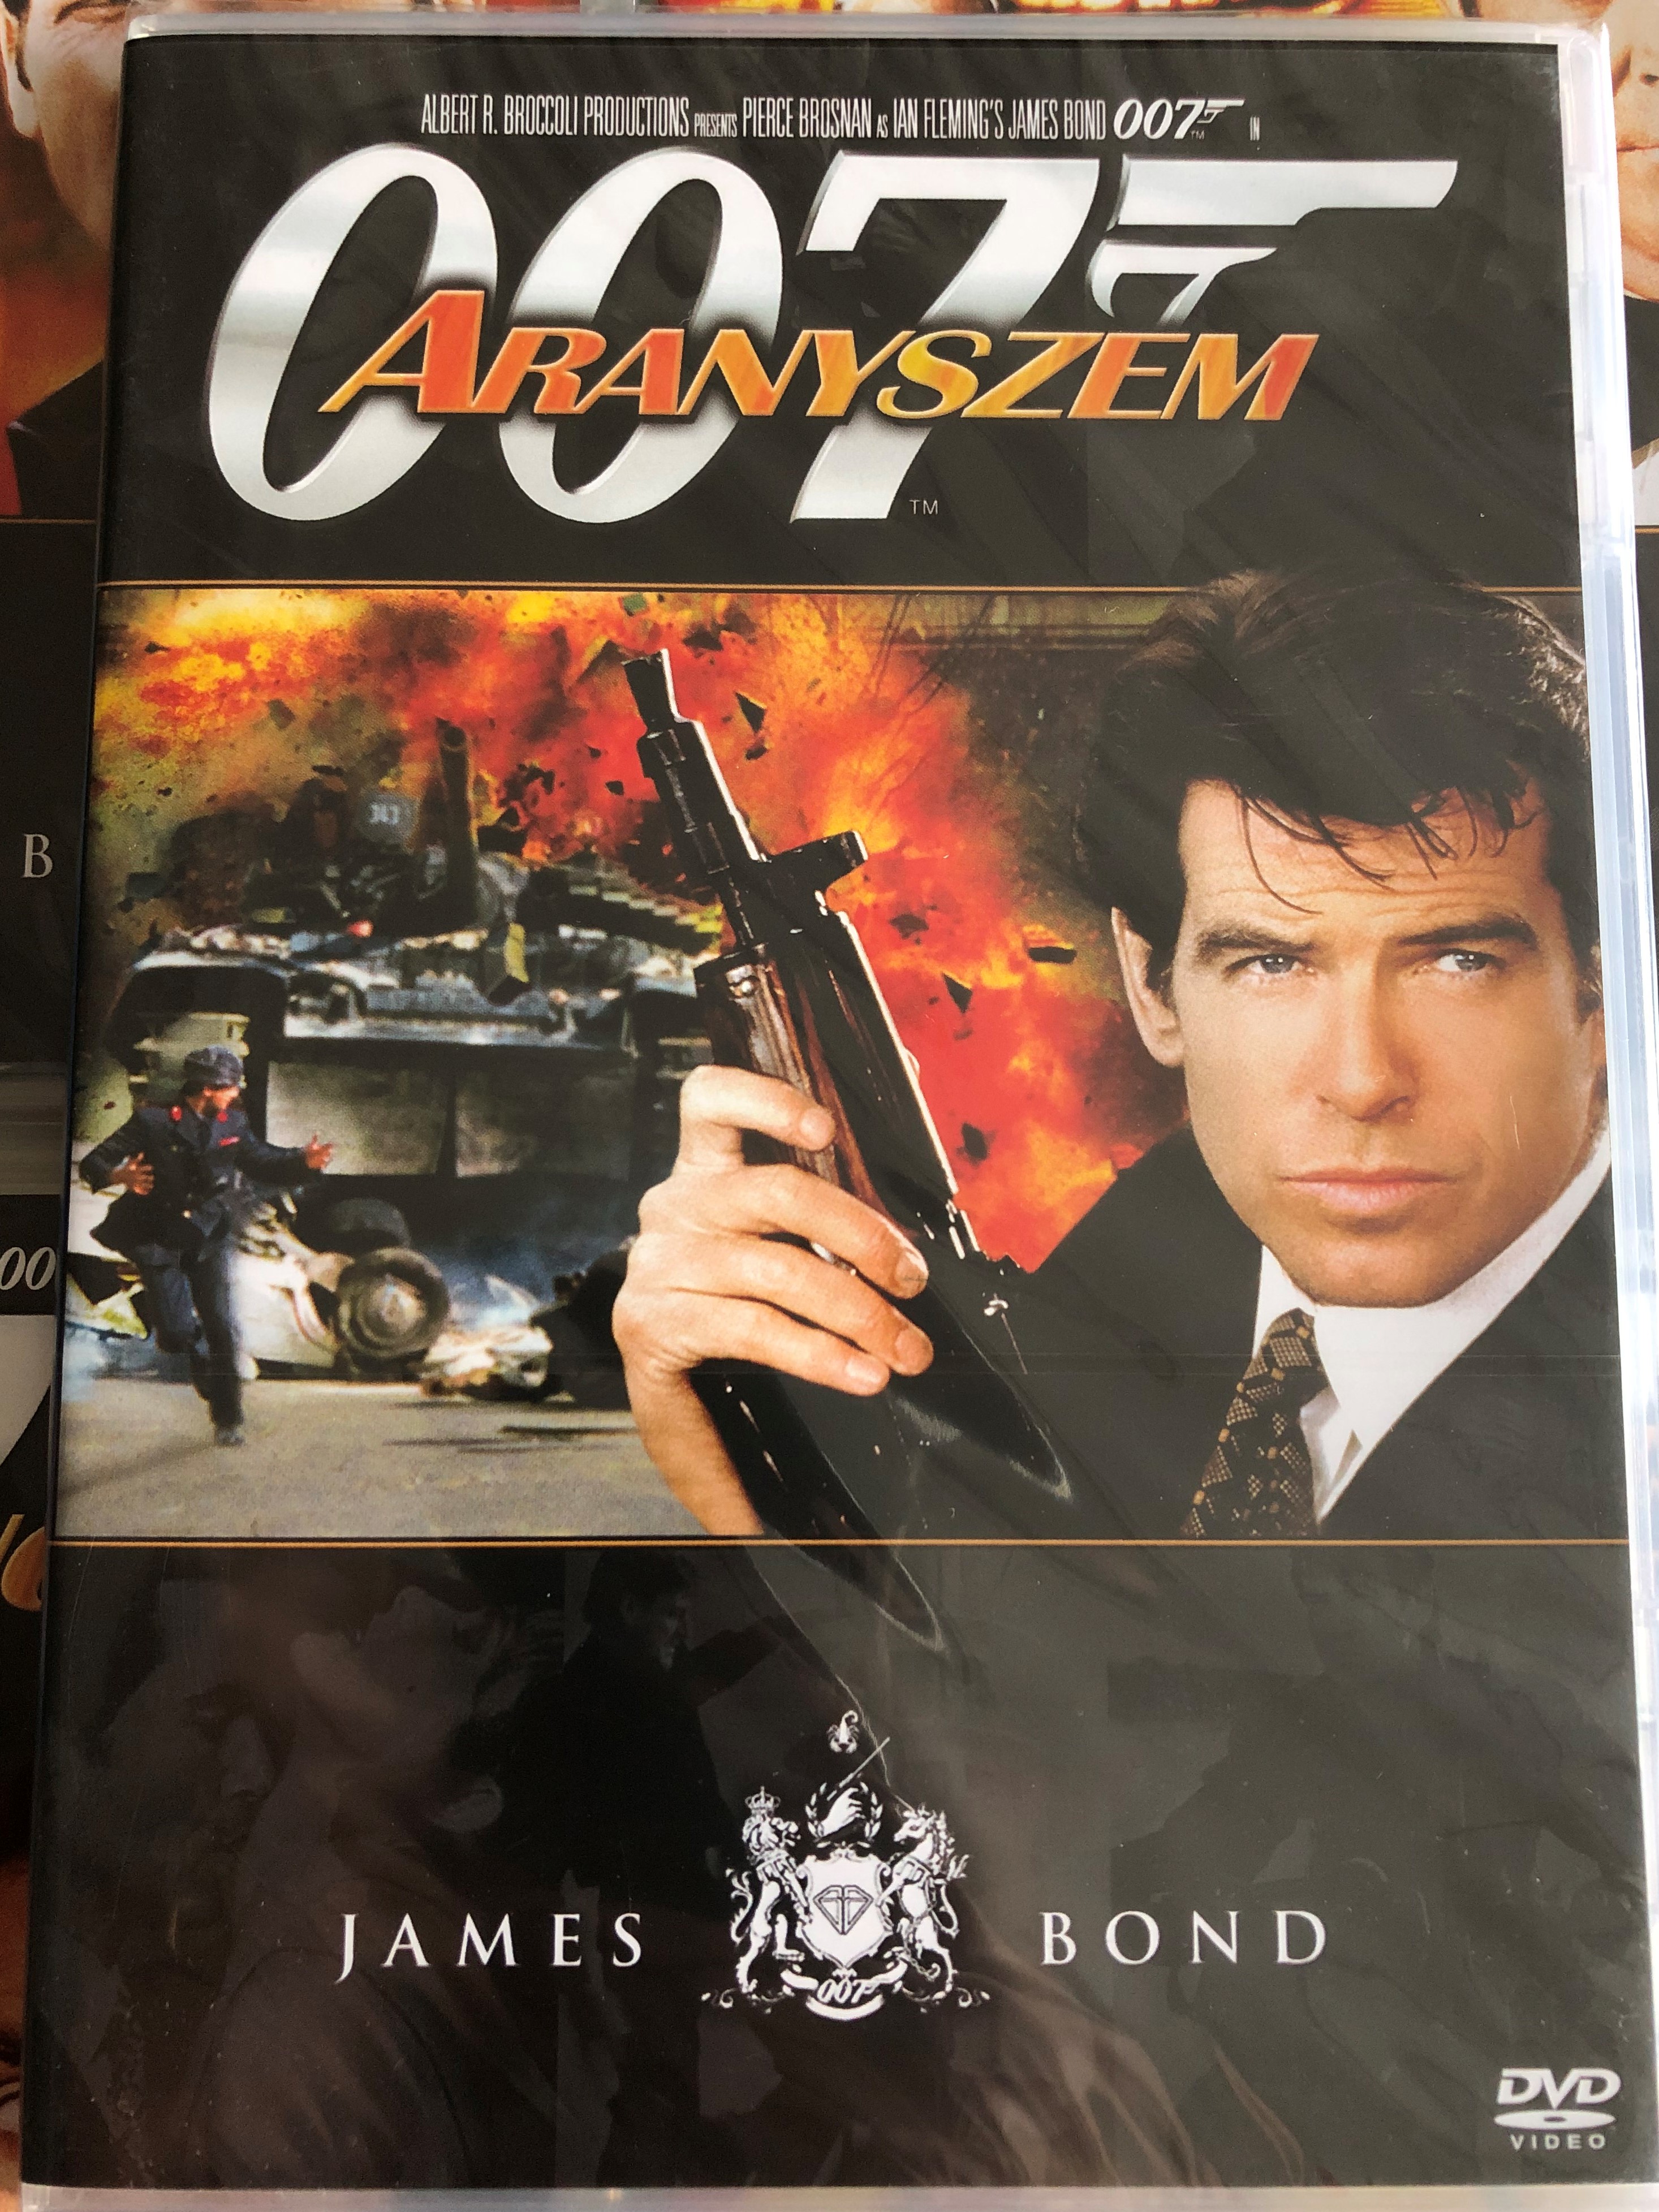 James Bond 007 - Goldeneye DVD 1995 James Bond - Aranyszem 1.JPG